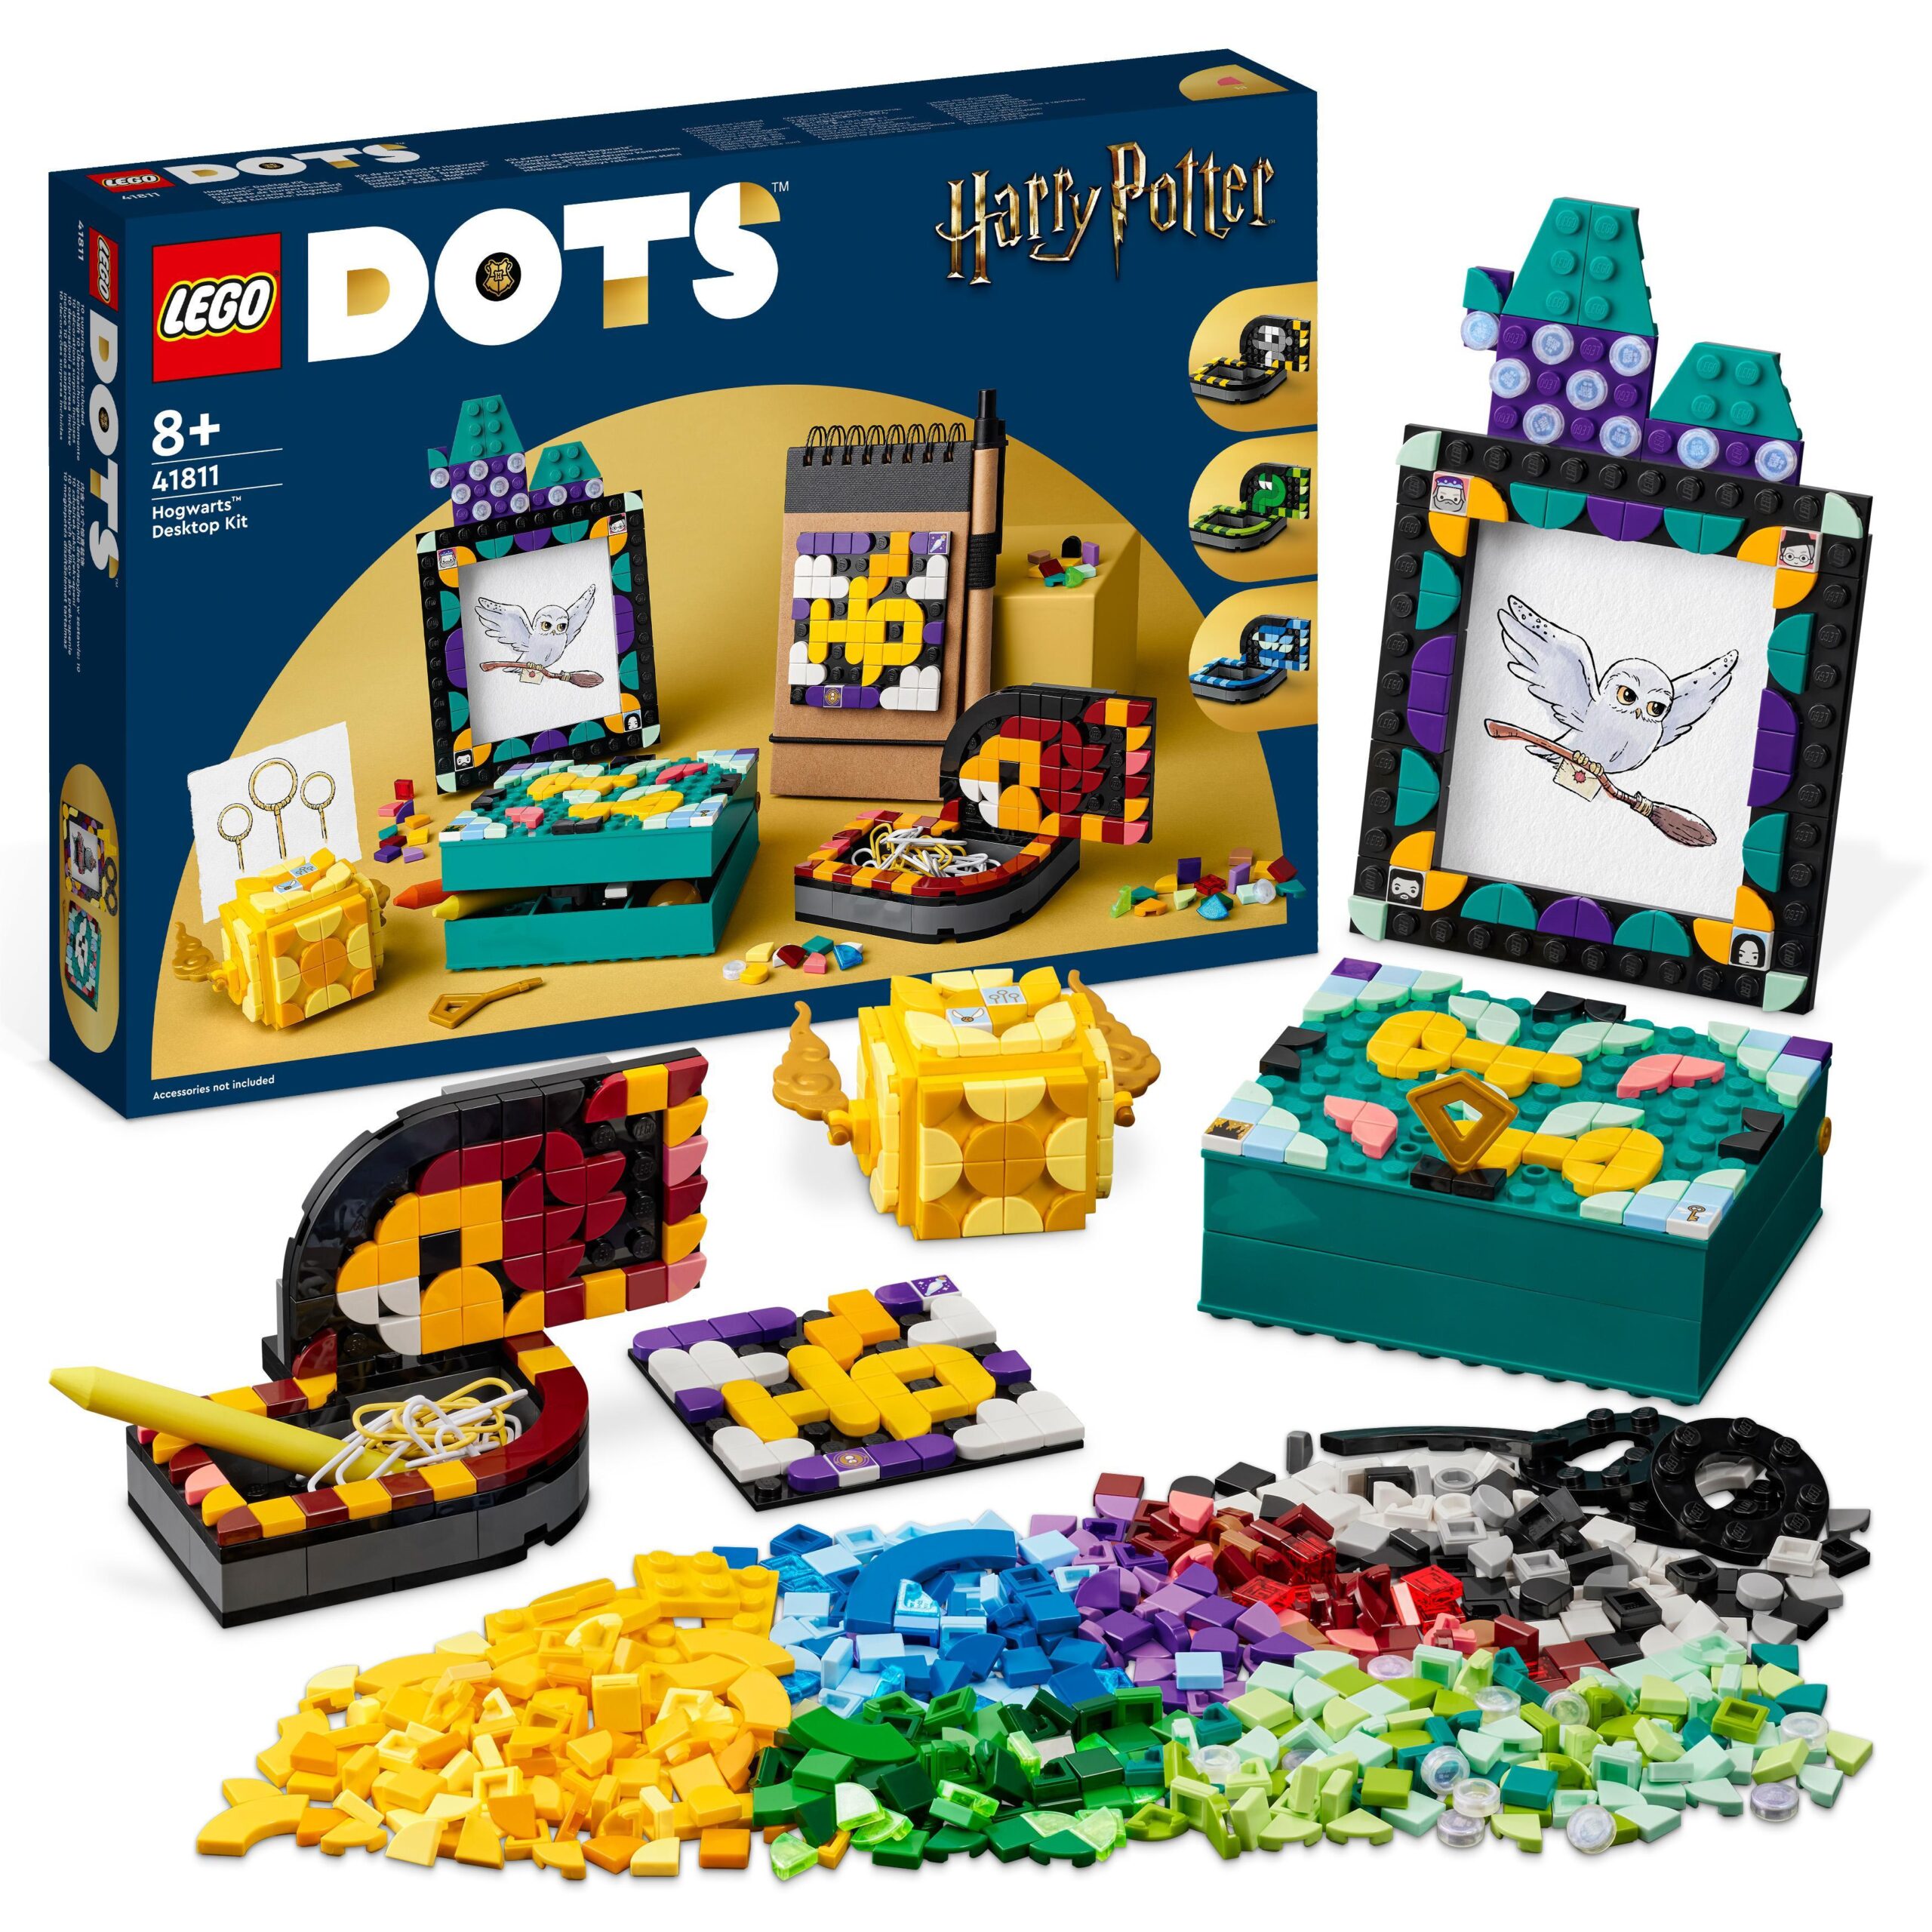 Lego dots 41811 kit da scrivania di hogwarts, accessori scrivania di harry potter con 2 portagioie, portafoto e toppa adesiva - 3083, DOTS